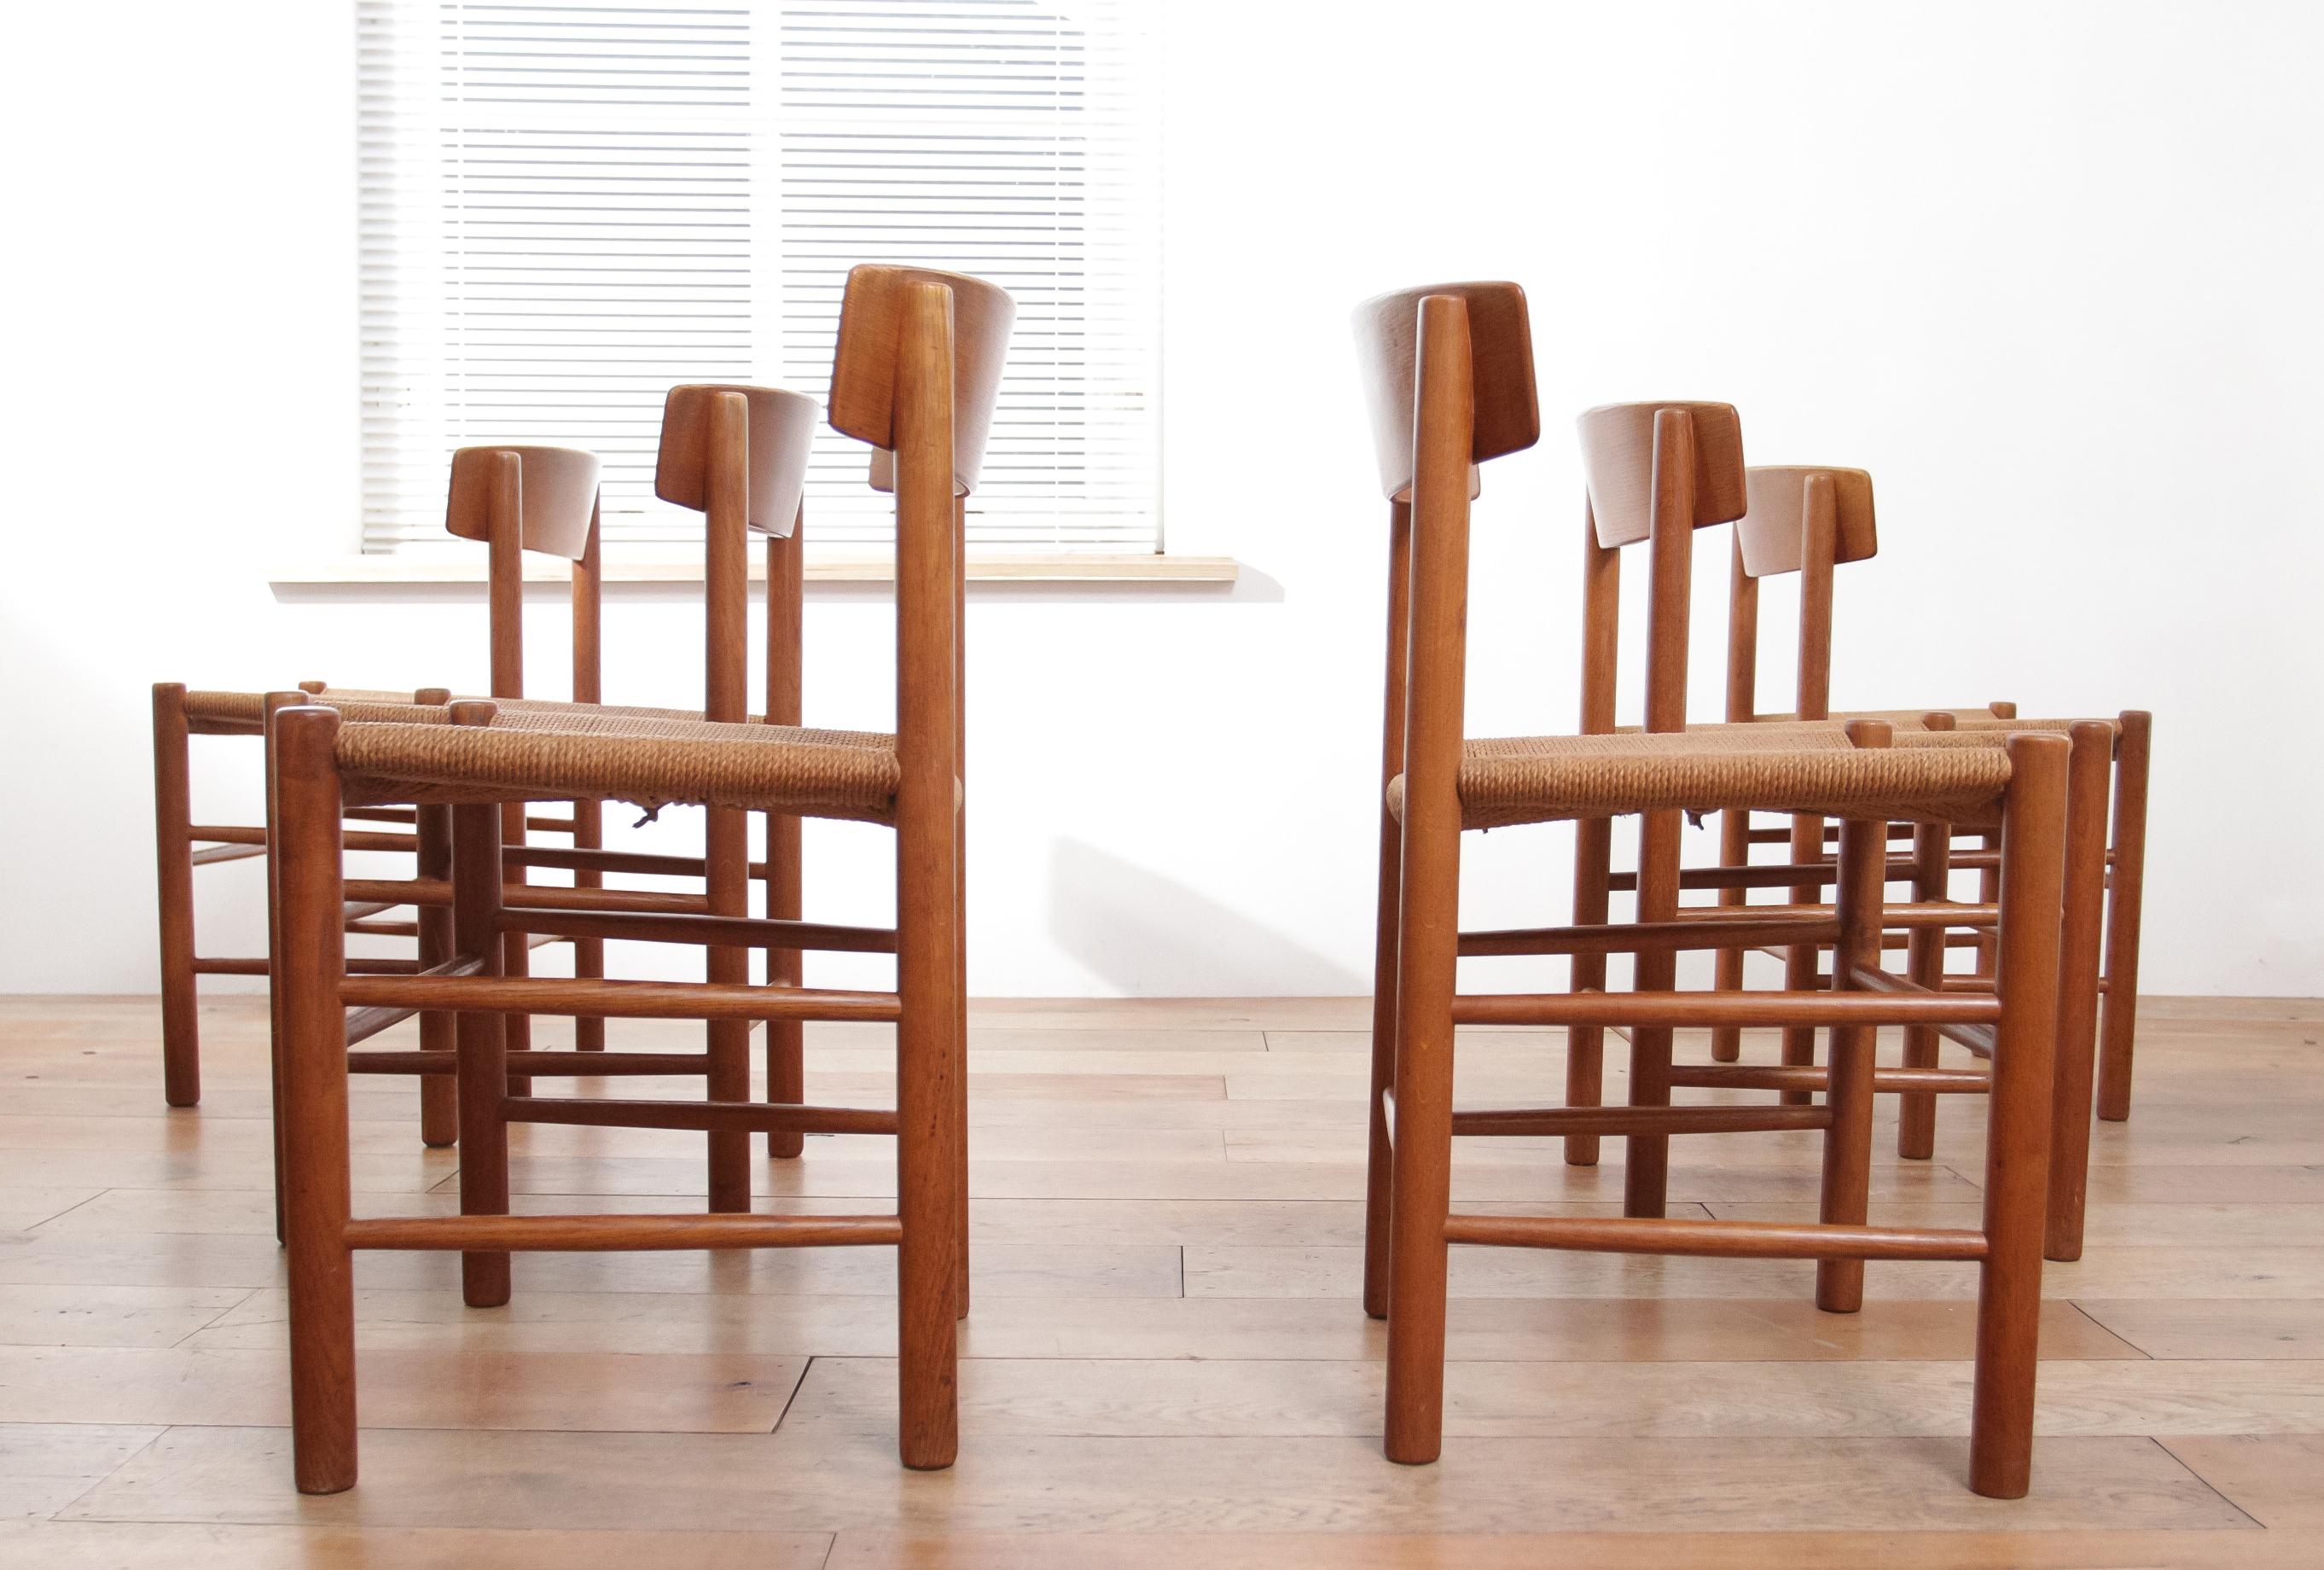 Die abgebildeten Stühle sind ein Musterbeispiel für skandinavisches Design, wahrscheinlich die J39-Esszimmerstühle, die der dänische Möbelhersteller Børge Mogensen um 1960 entworfen hat. Die Stühle zeichnen sich durch ihre schlichte, aber elegante